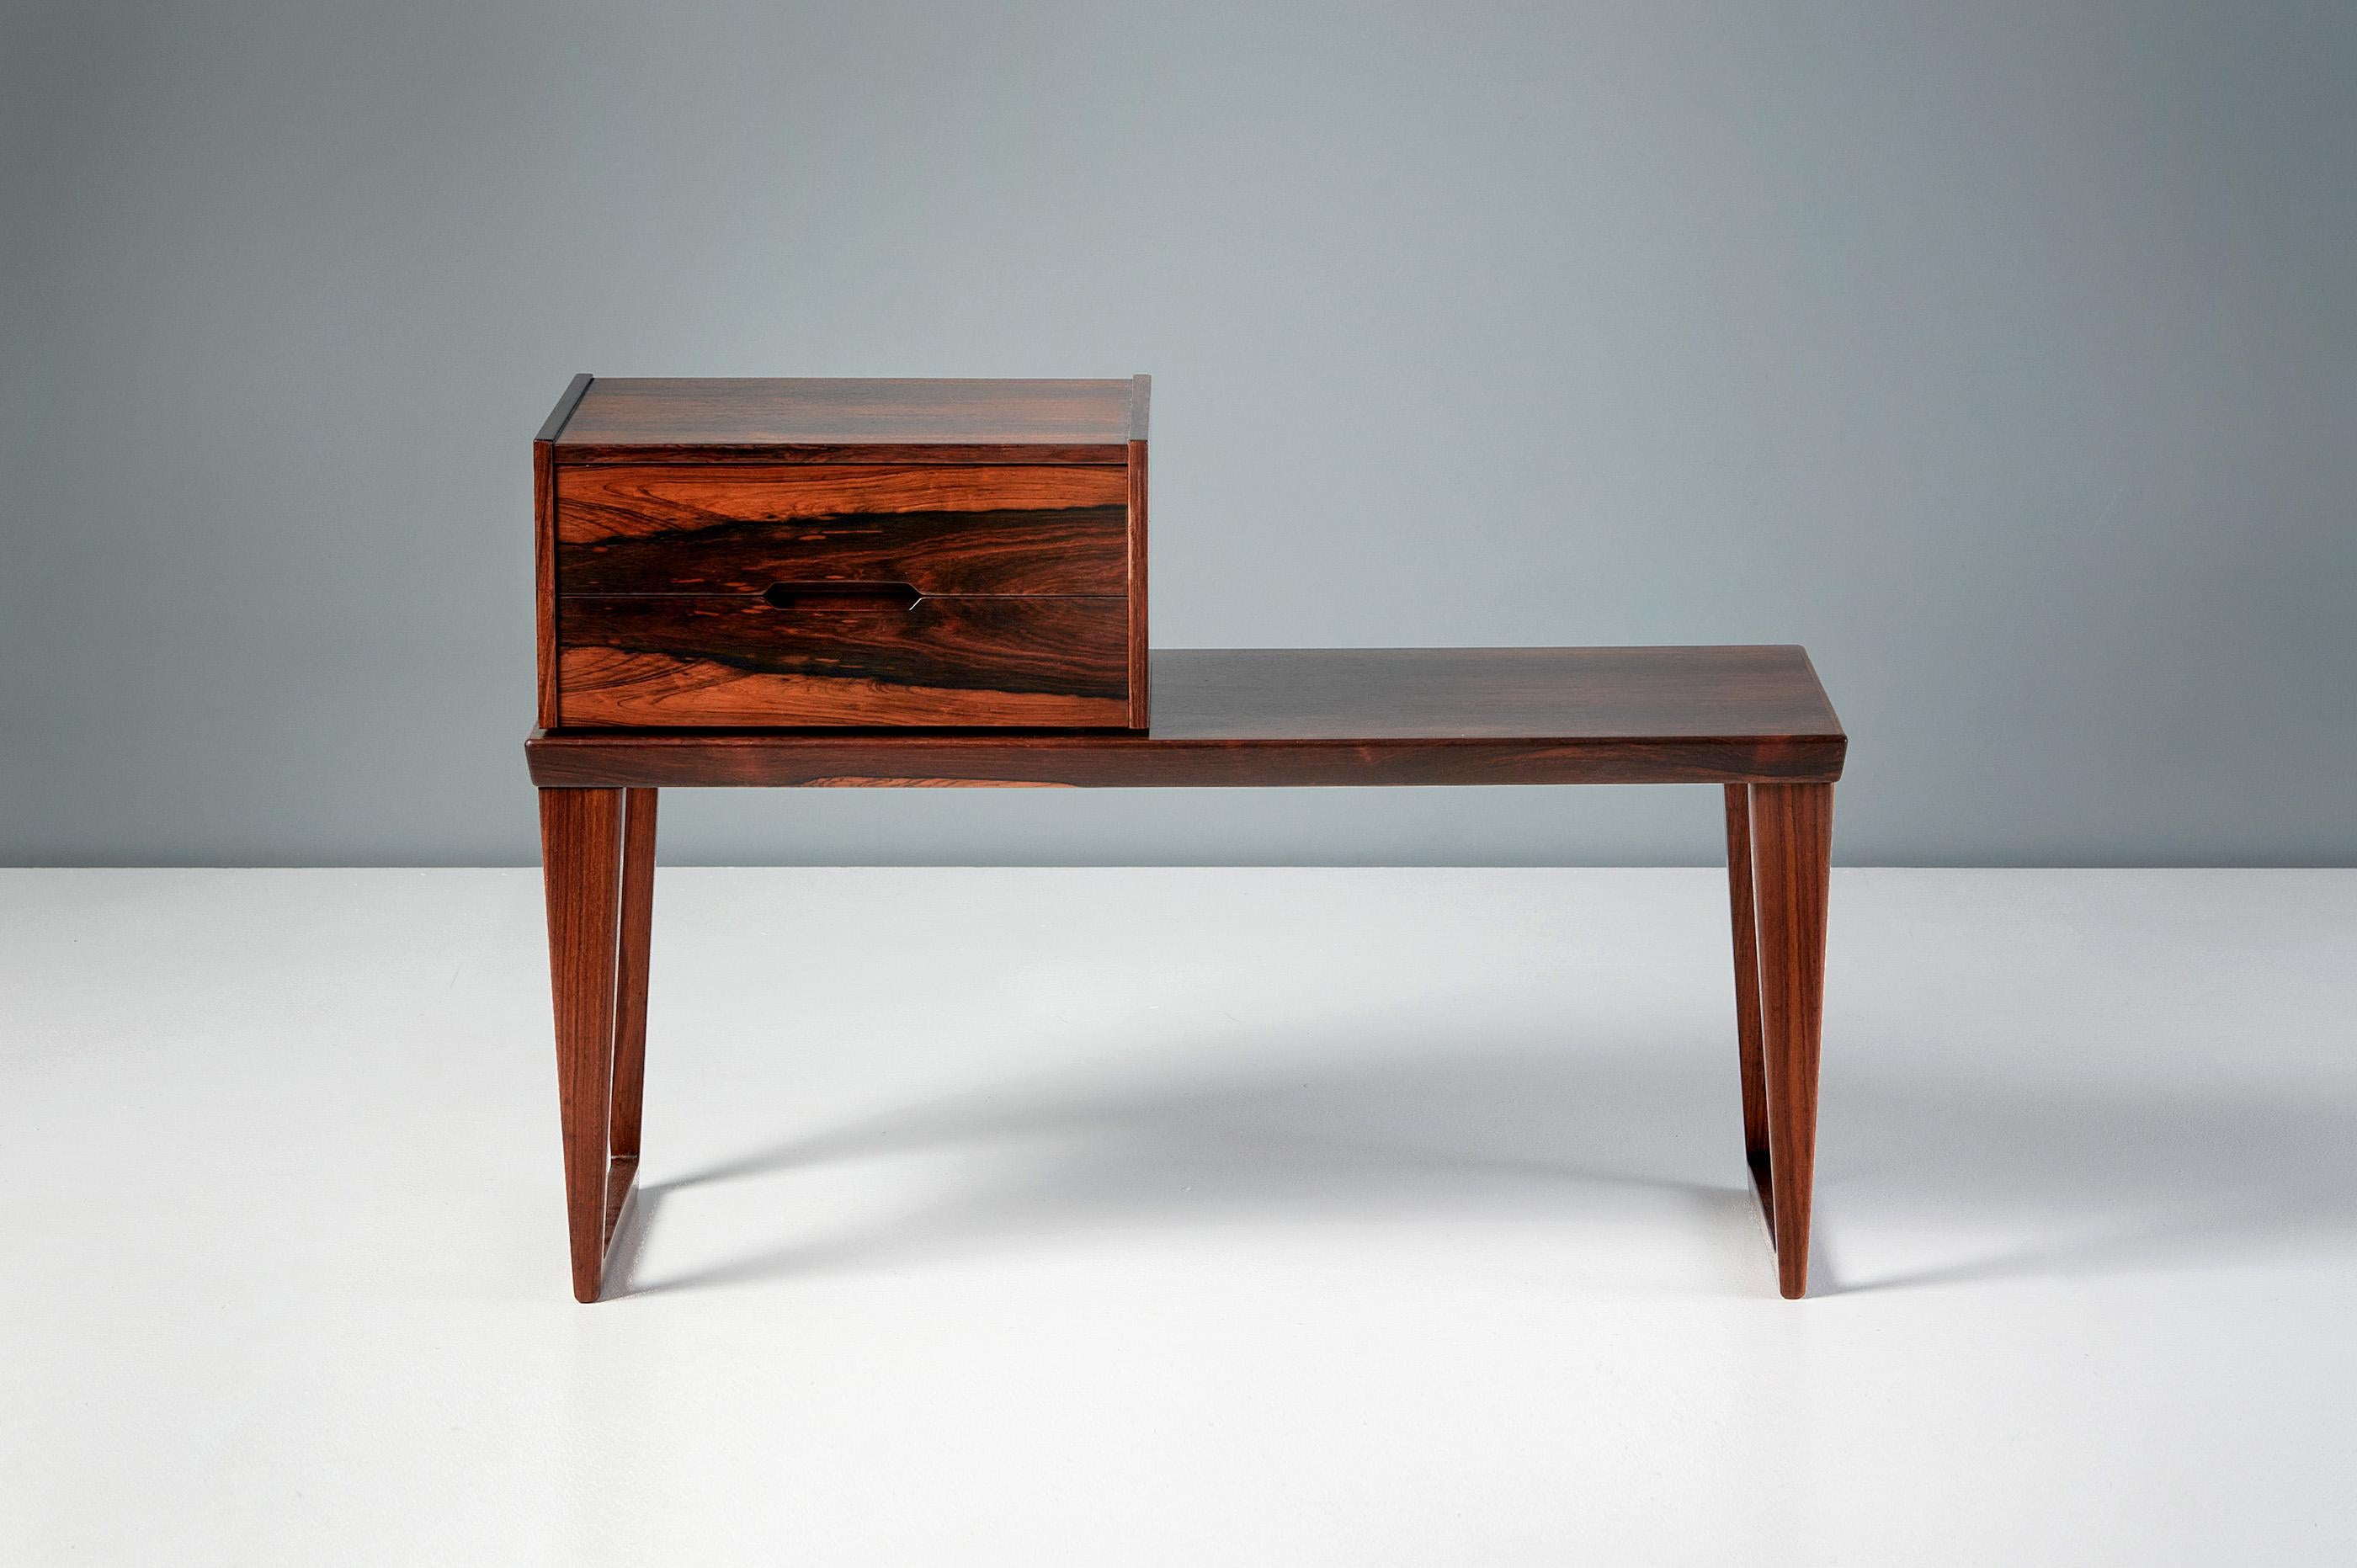 Superbe banc en bois de rose au grain exotique, accompagné d'un meuble à deux tiroirs assorti, pouvant être placé à n'importe quel endroit de la surface du banc. Cette pièce a été conçue par Kai Kristiansen, icône du design danois, et produite par